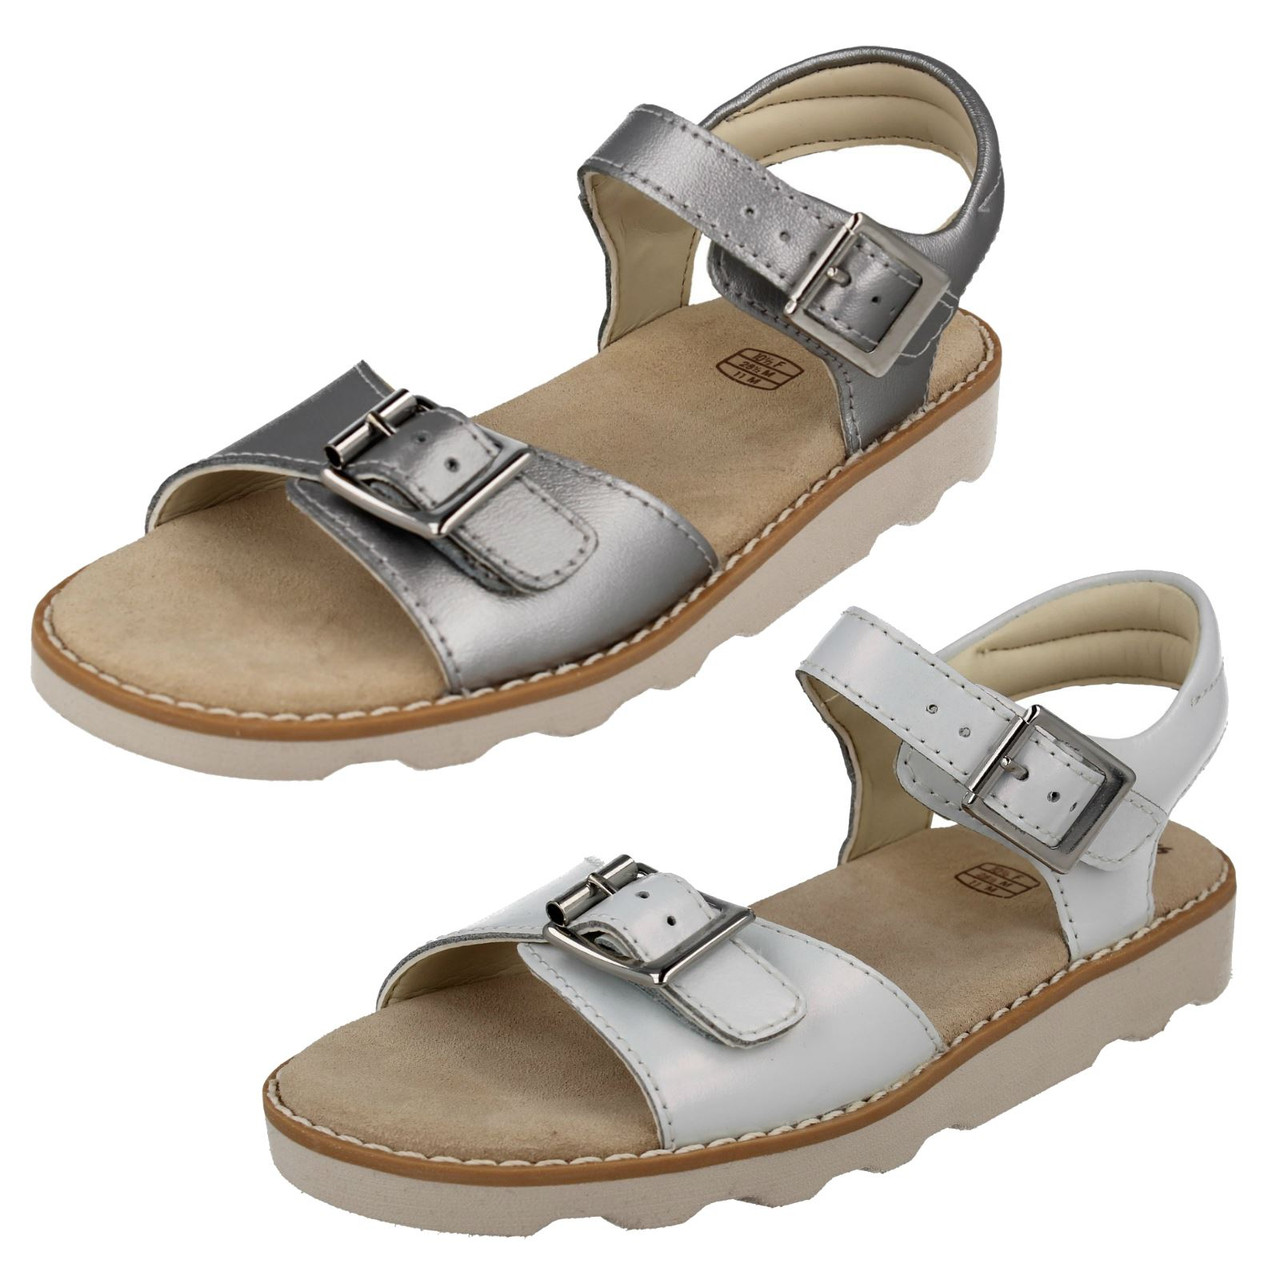 clarks summer sandals 2013